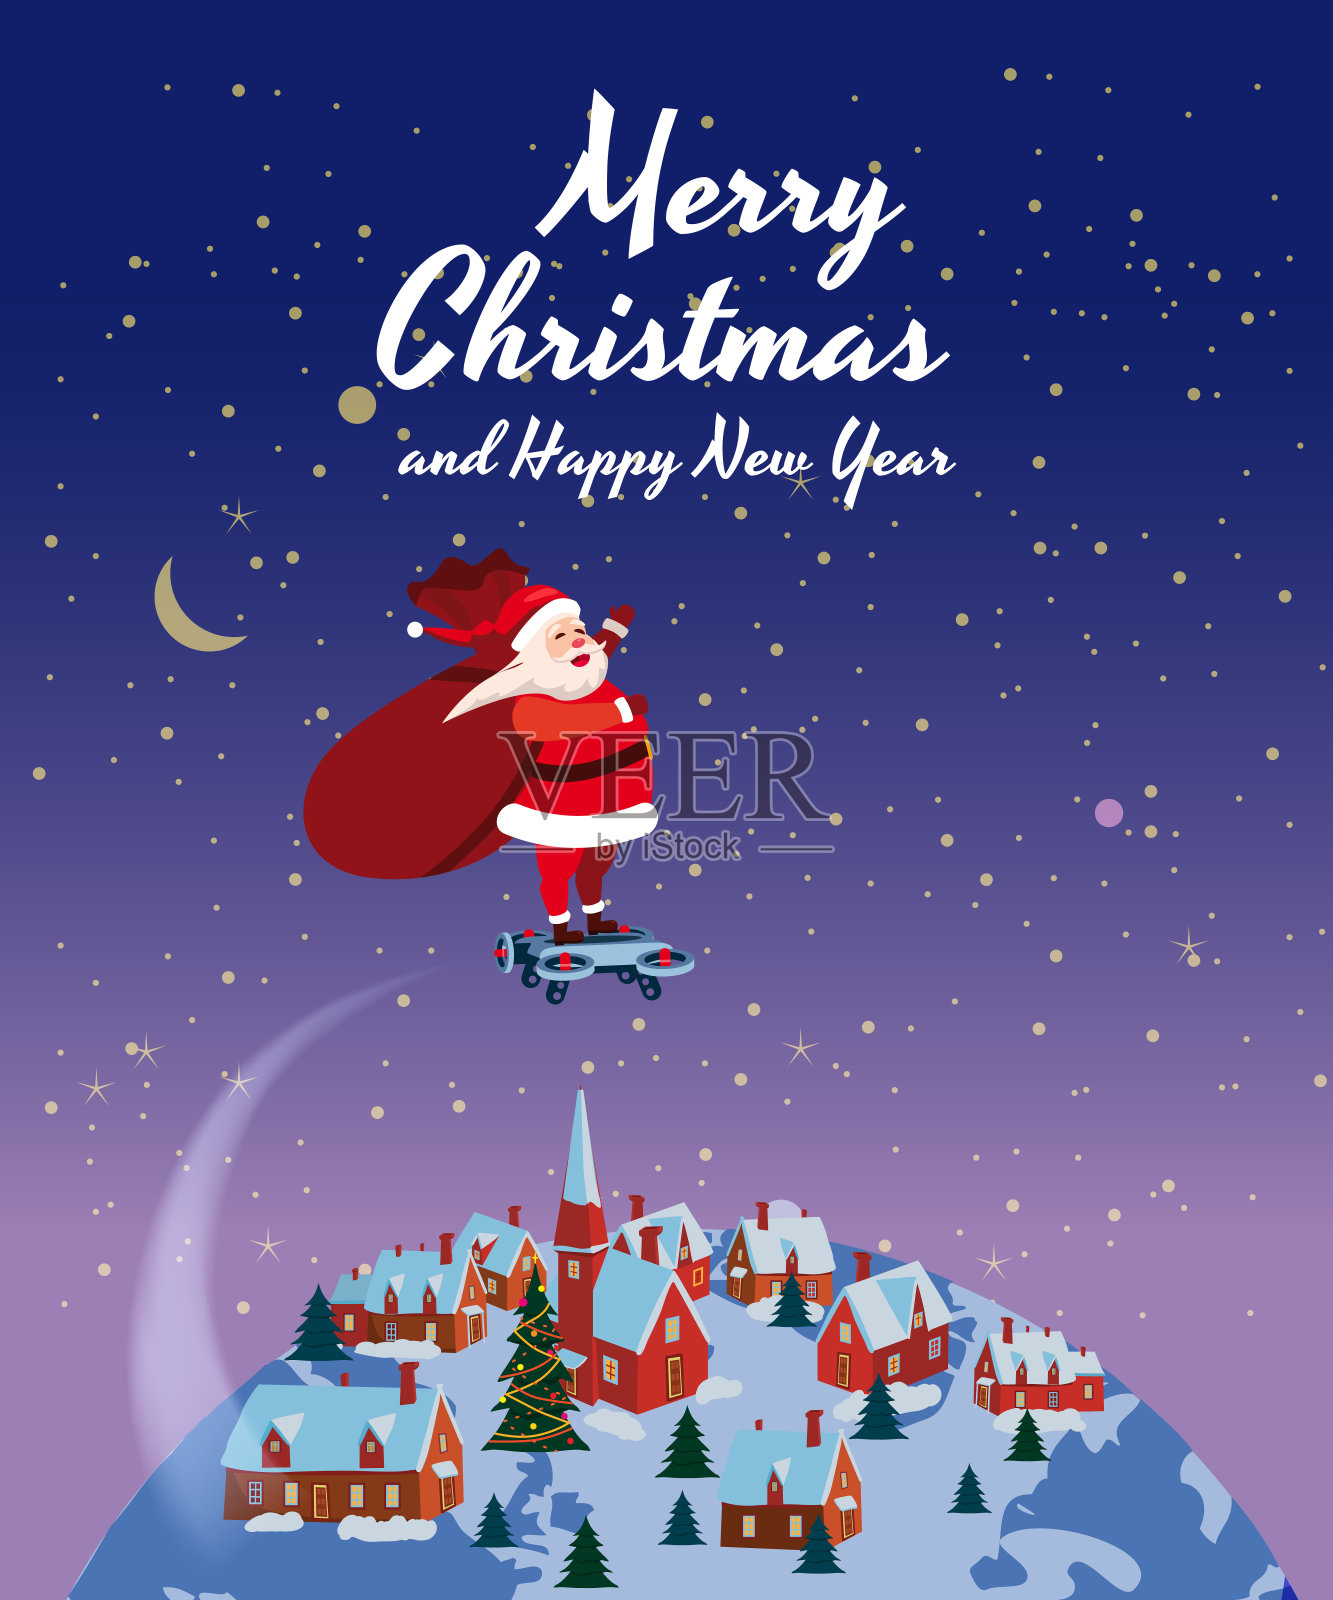 悬浮滑板上的圣诞老人带着一袋礼物飞着周游世界。恭贺圣诞和新年快乐。矢量，横幅，海报，贺卡，插图，孤立设计模板素材